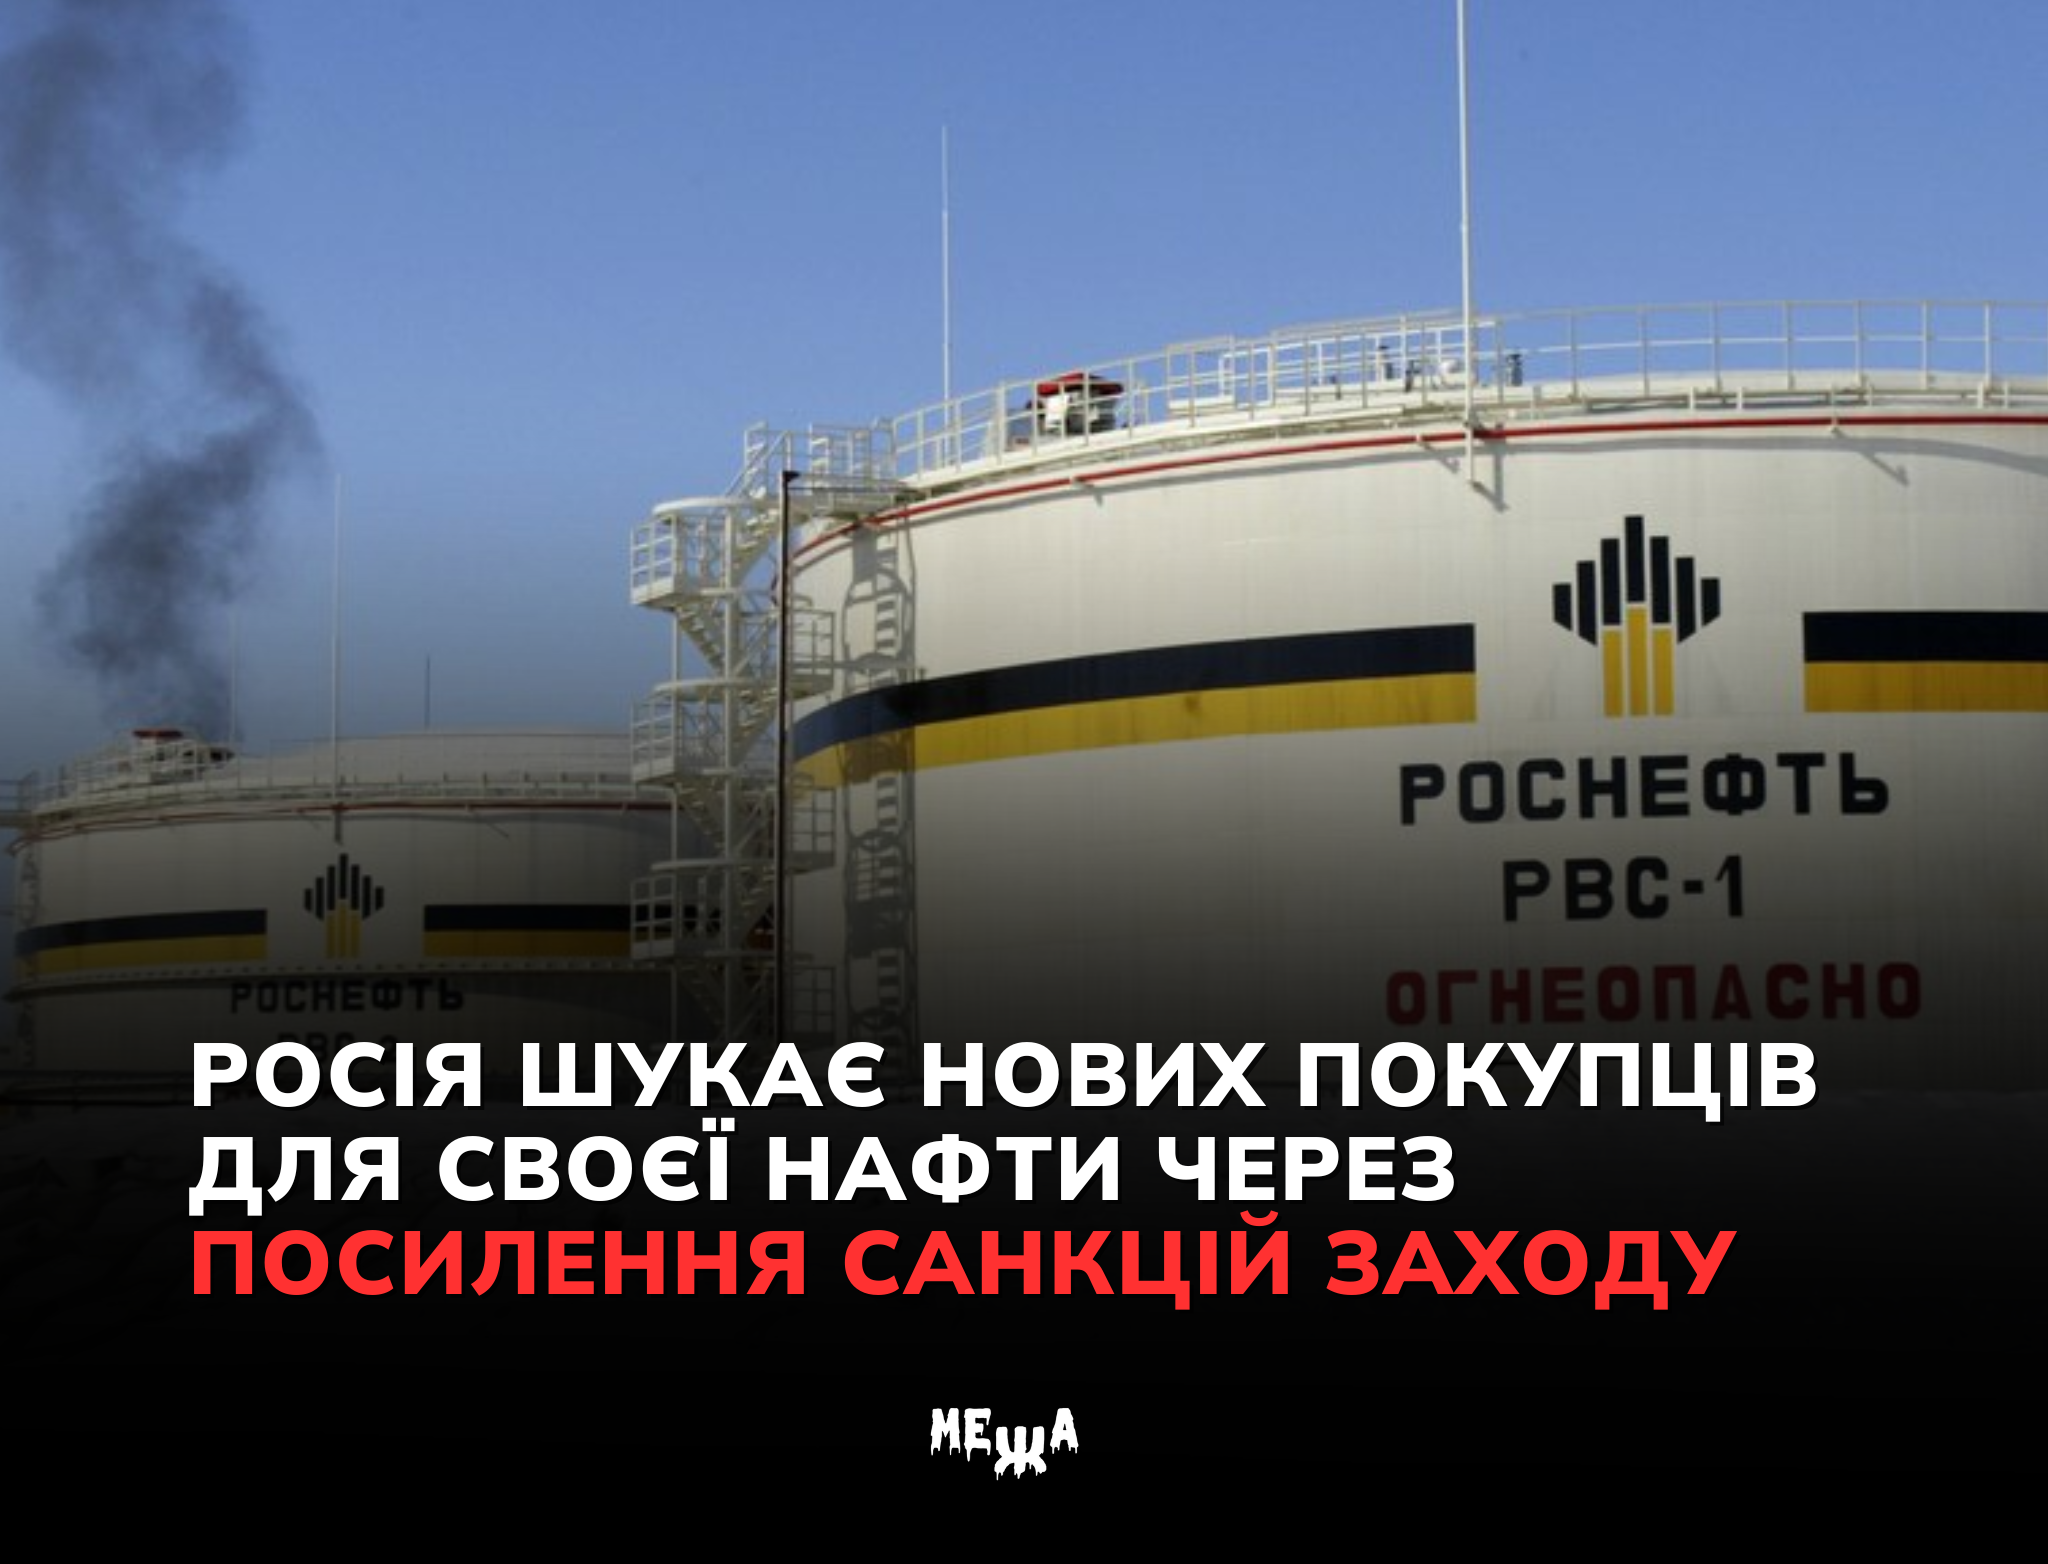 Росія шукає нових покупців для своєї нафти через посилення санкцій Заходу